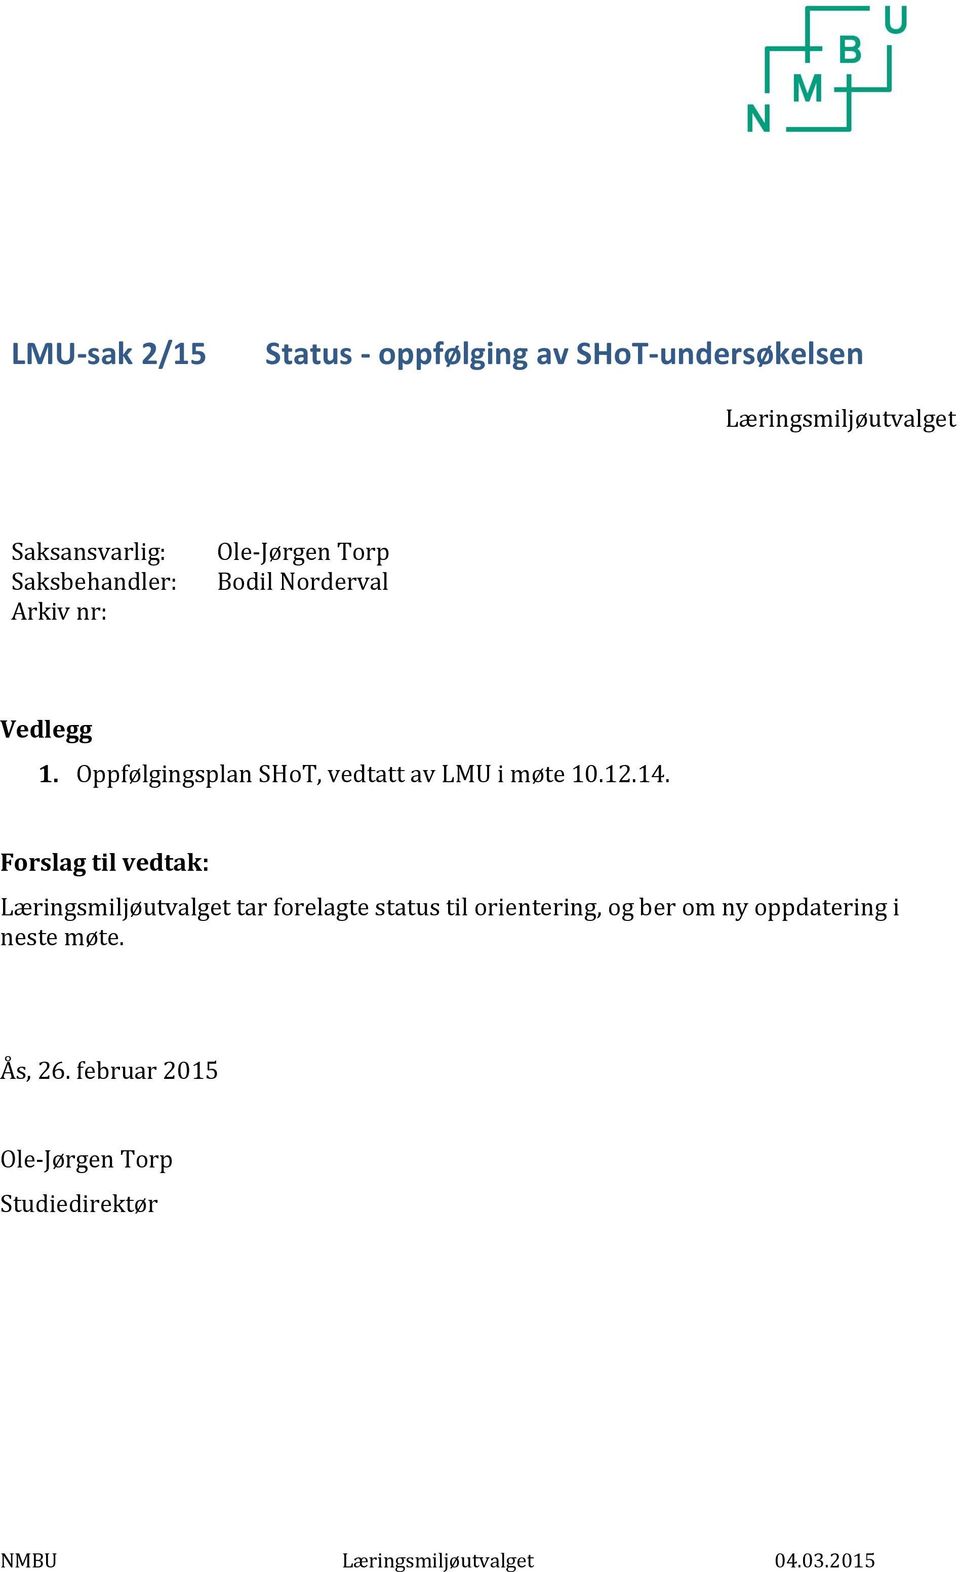 Oppfølgingsplan SHoT, vedtatt av LMU i møte 10.12.14.